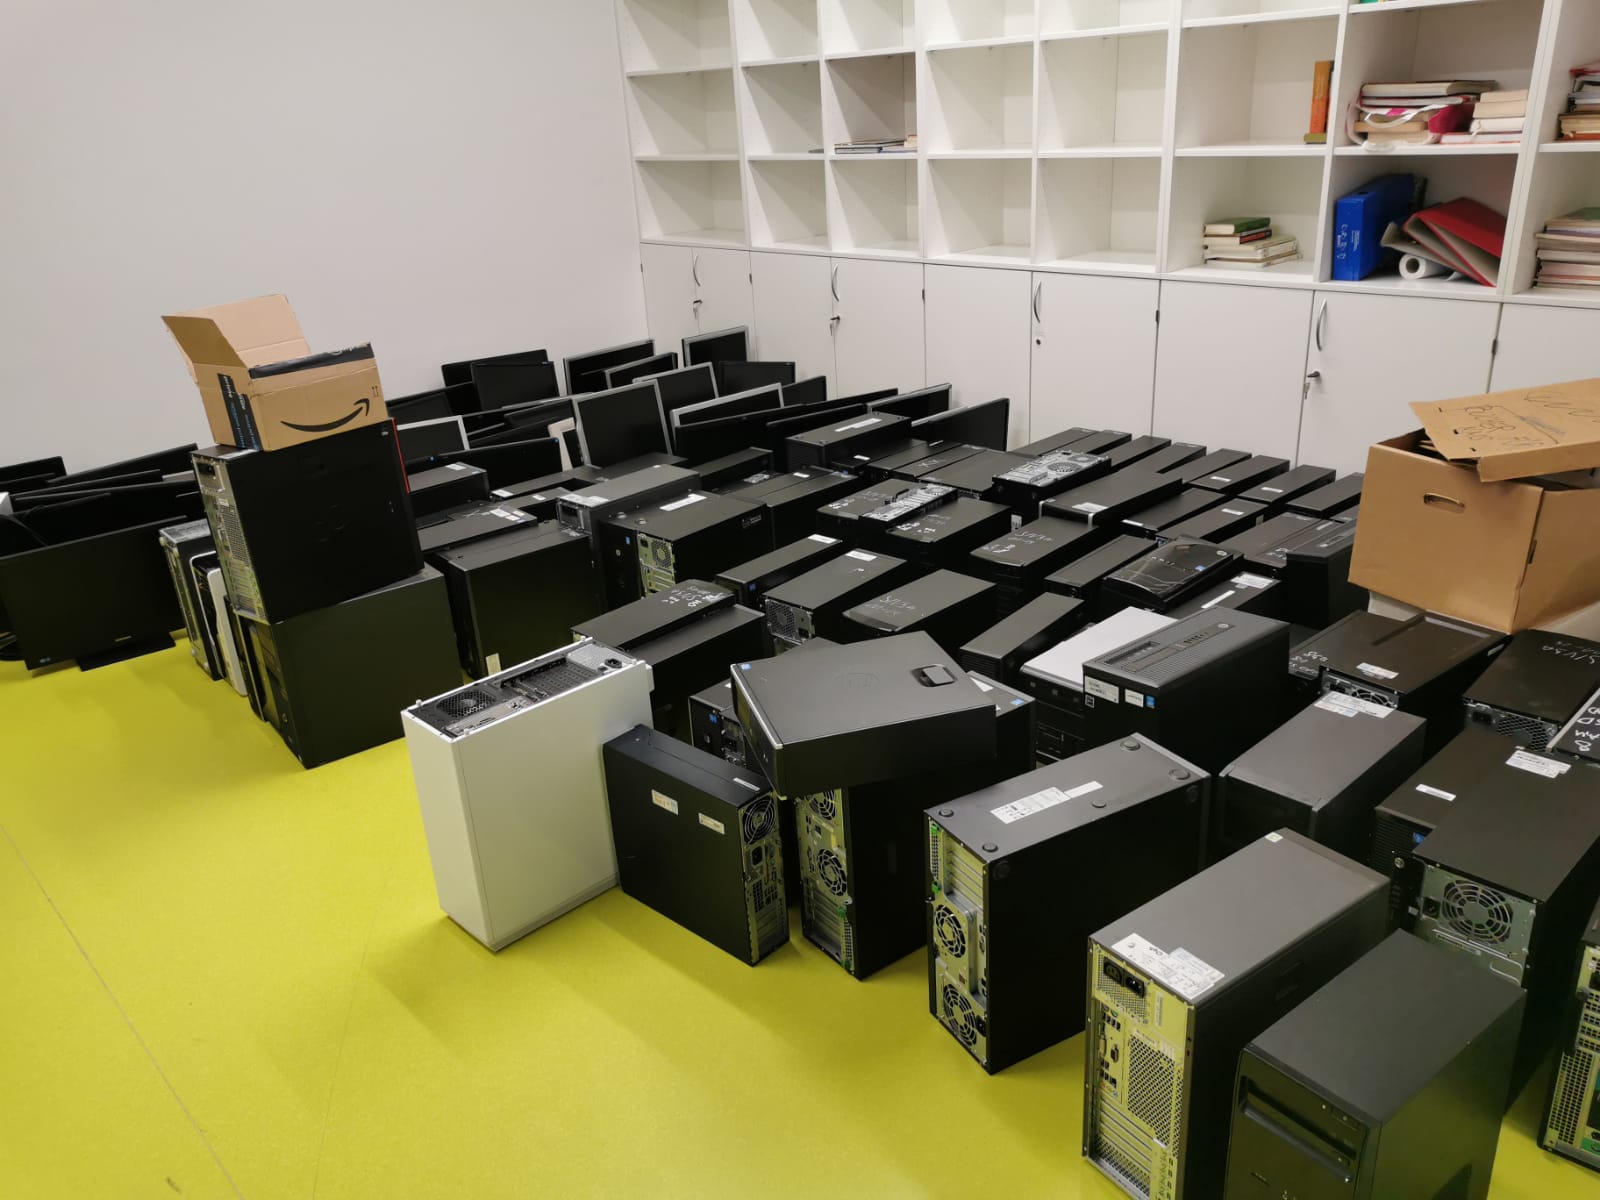 Lieferung von 90 PC Komplettsystemen an eine Schule in Wien